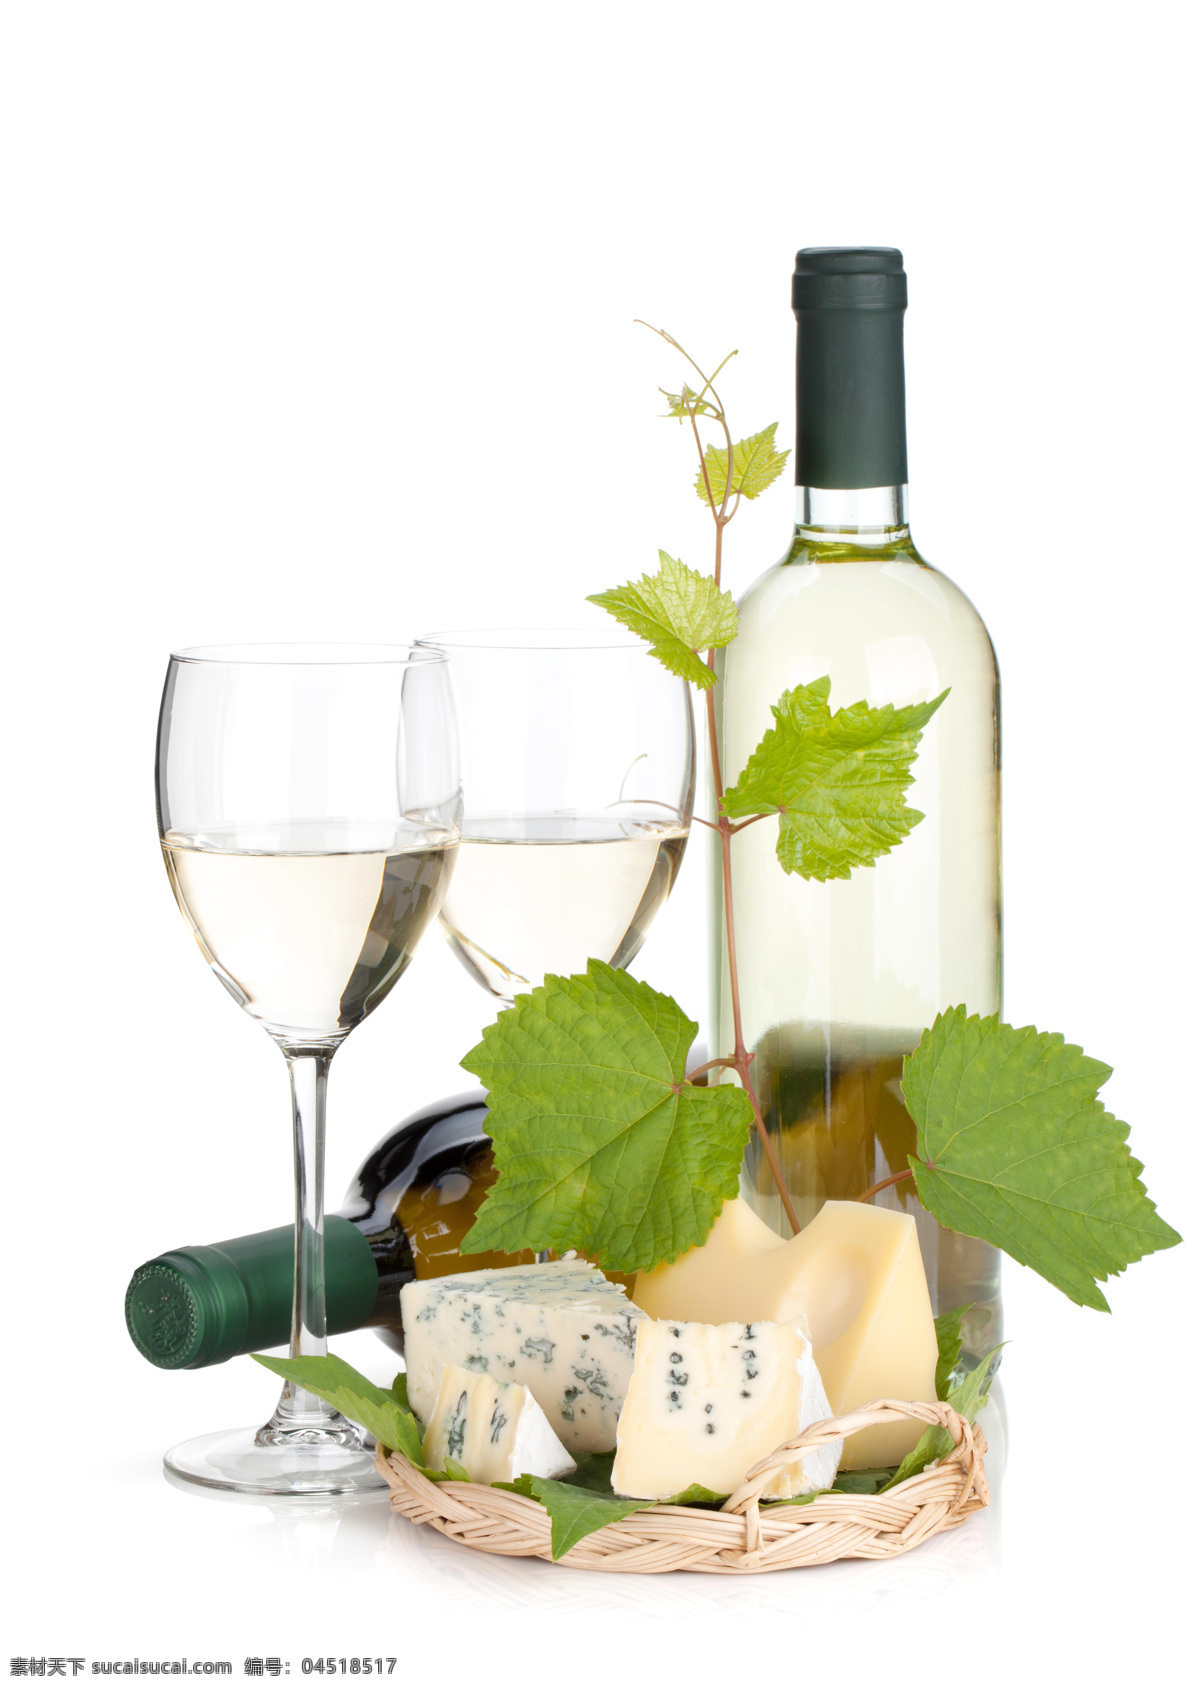 美味 葡萄酒 葡萄 新鲜水果 绿叶 奶酪 高脚杯 酒水饮料 餐饮美食 白色